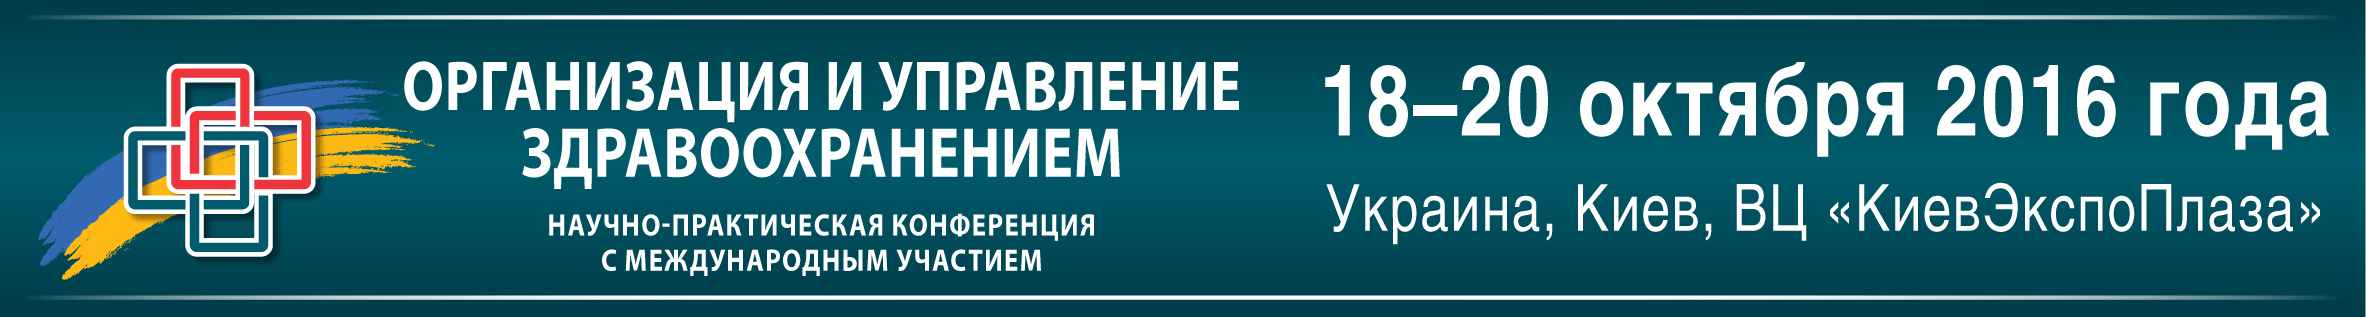 www.medforum.in.ua/